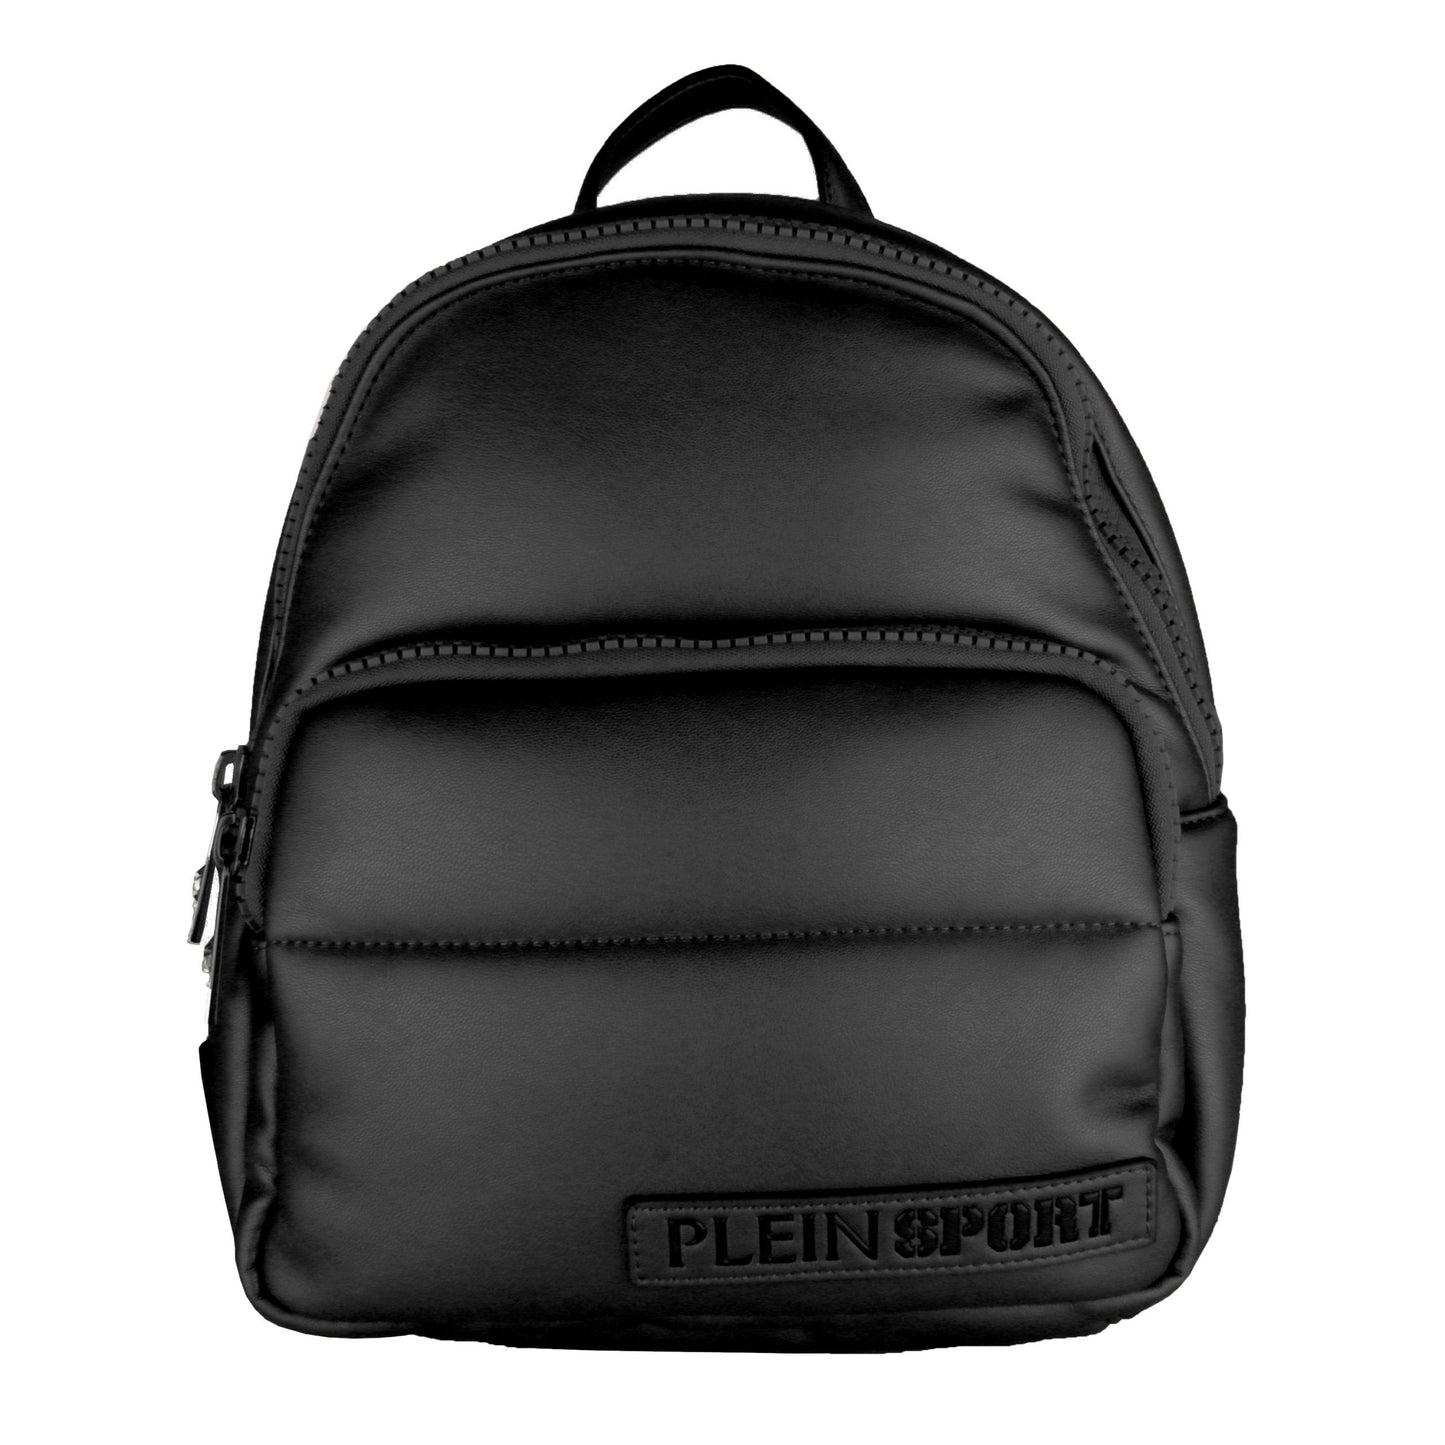 Elegant Black Designer Backpack with Logo Detailing